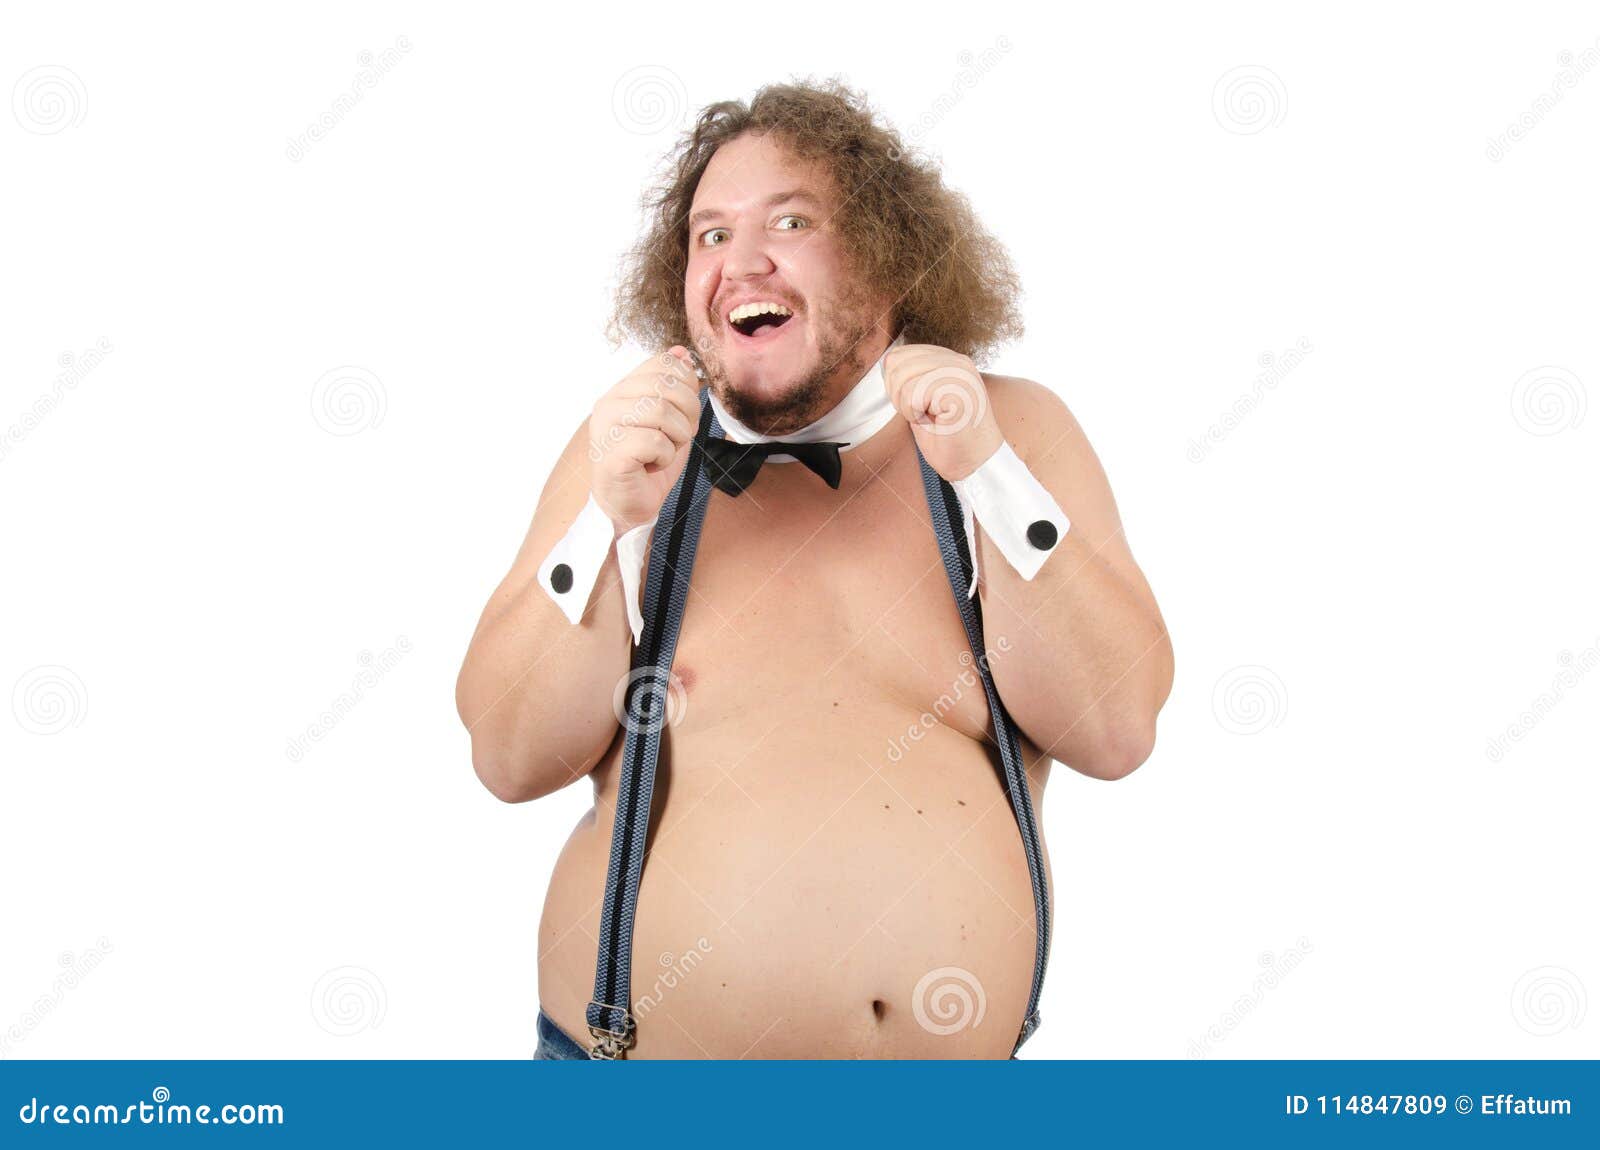 Male fat stripper